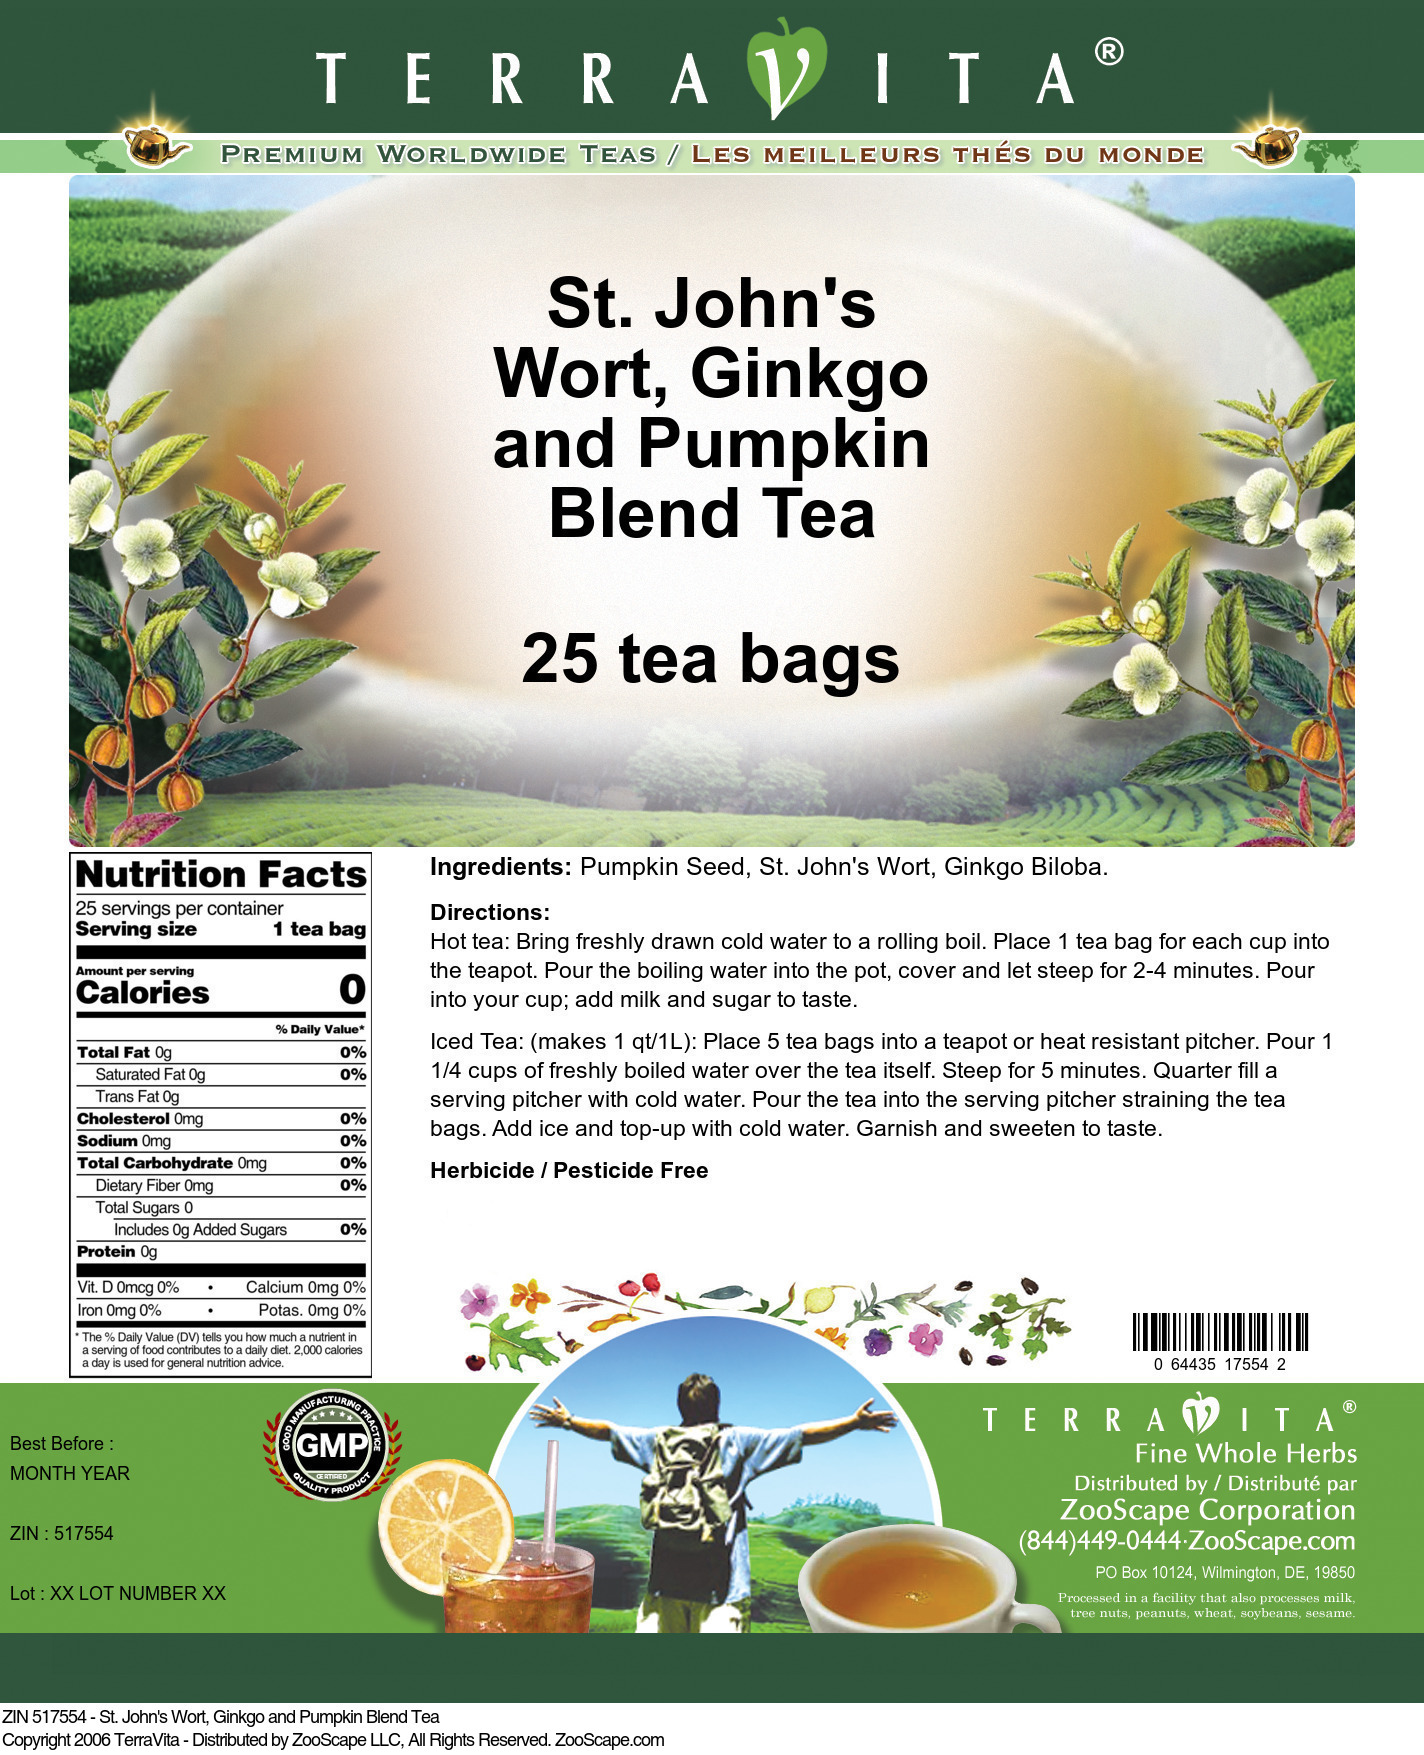 St. John's Wort, Ginkgo and Pumpkin Blend Tea - Label